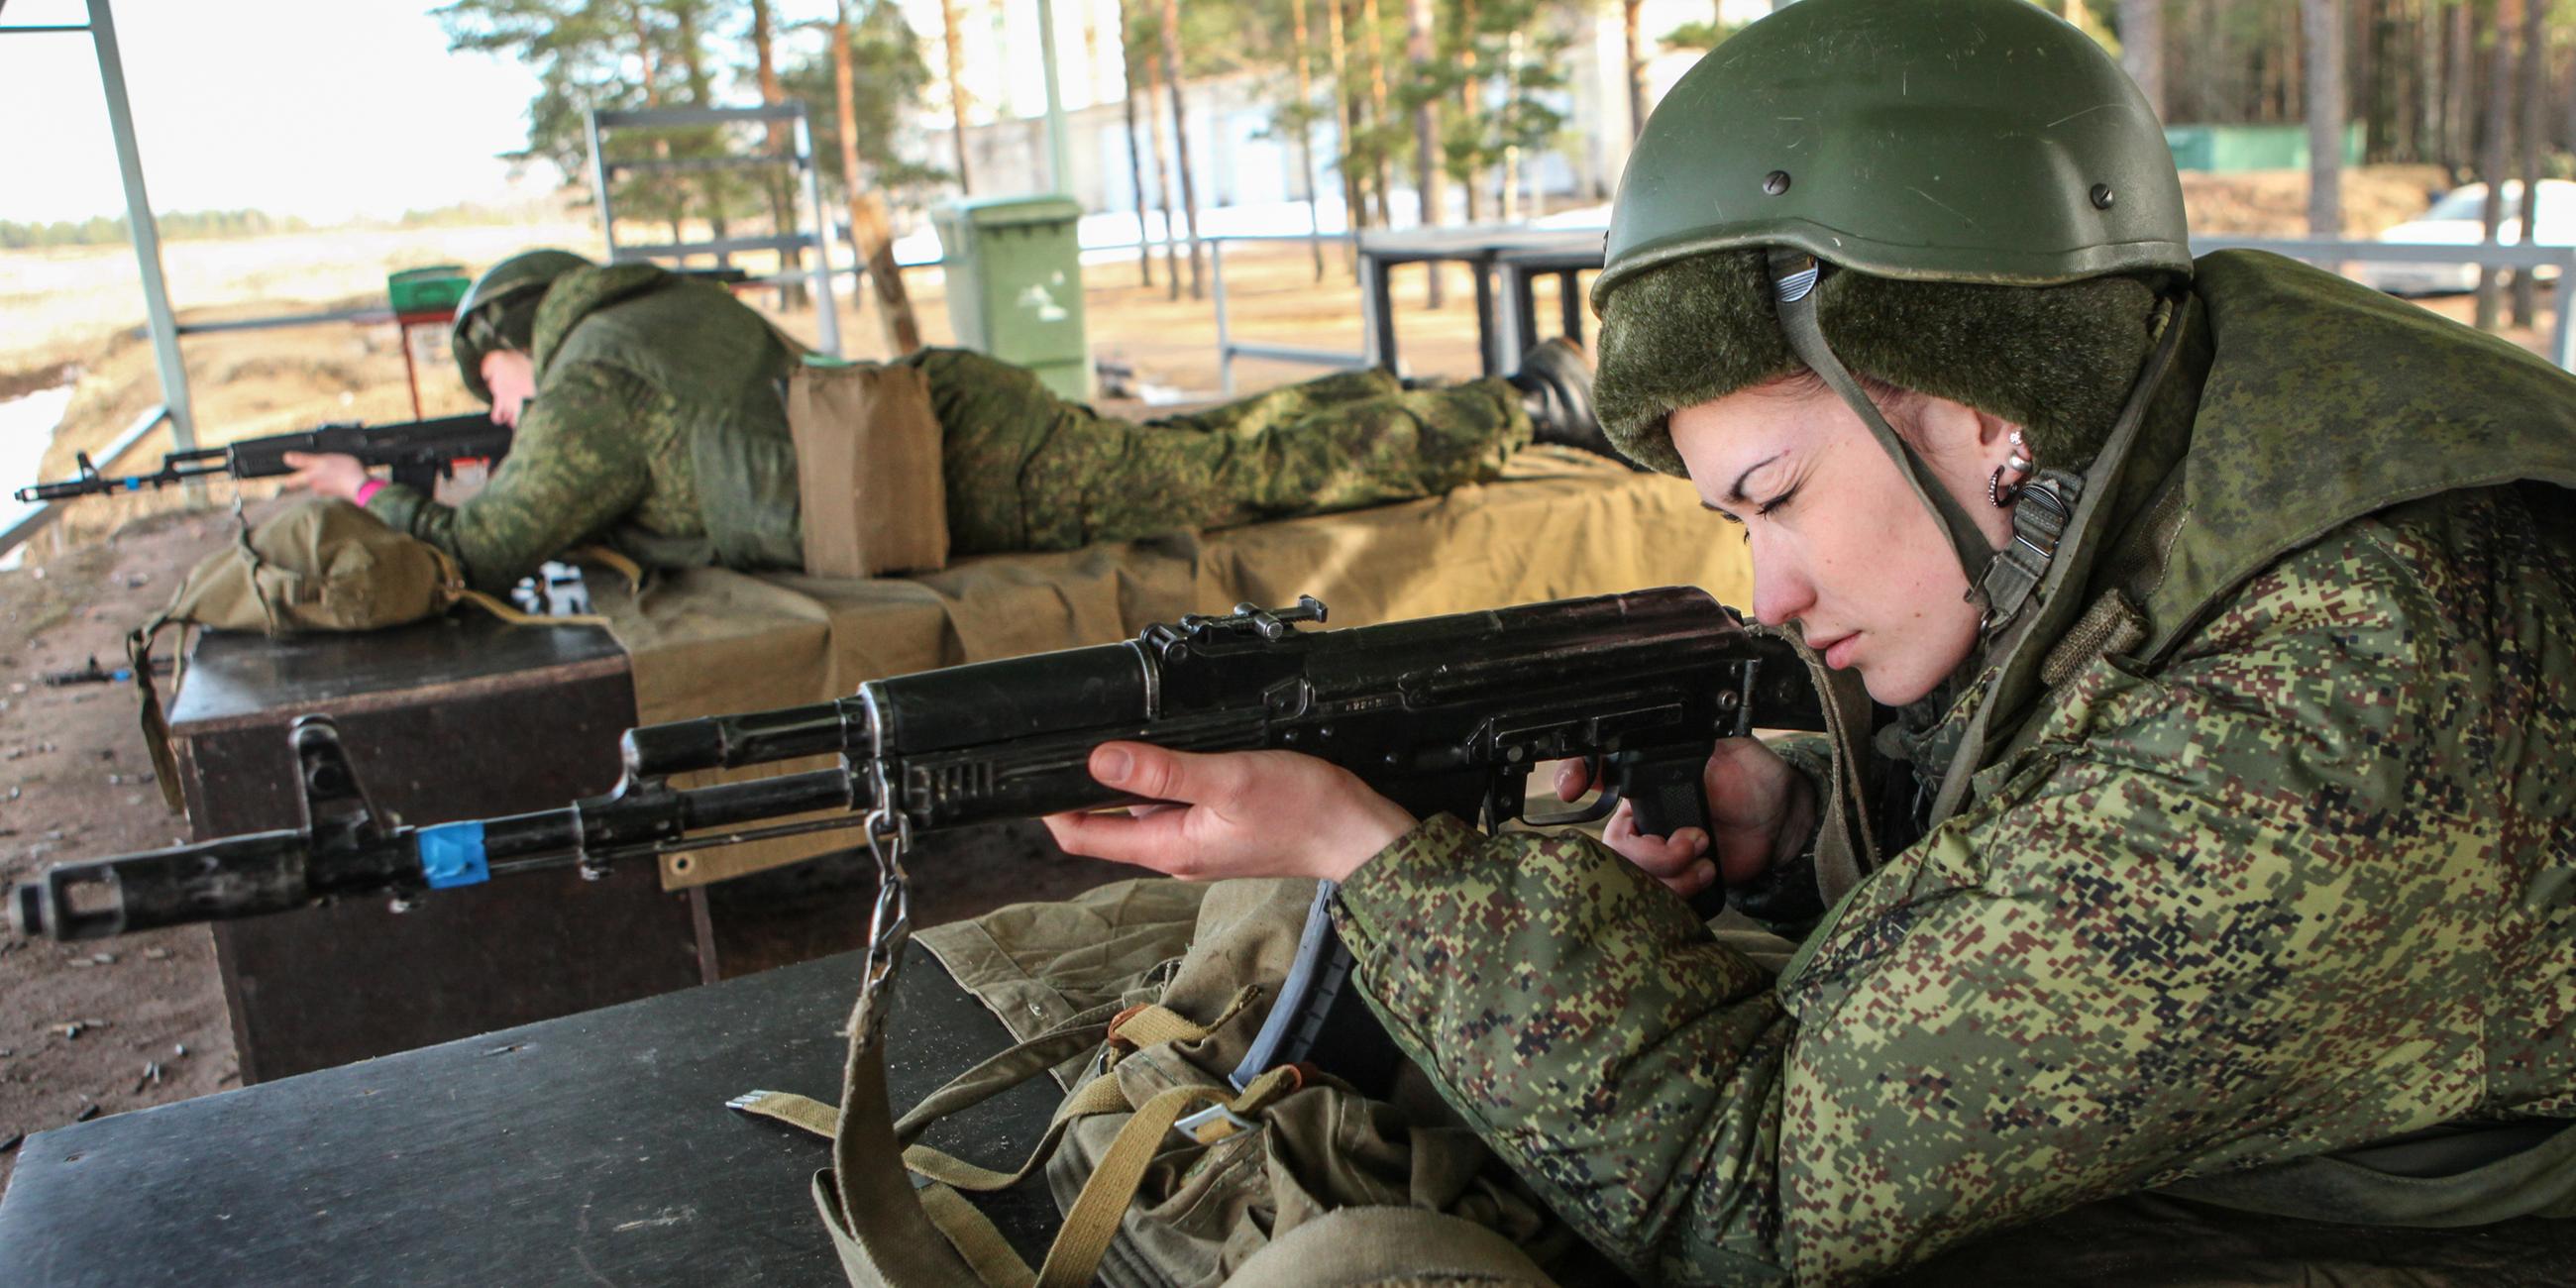 Archiv: Weibliche Vertragssoldaten nehmen an einem allgemeinen militärischen Ausbildungskurs im Gebiet Leningrad, Russland, teil. Am 20.03.2015 